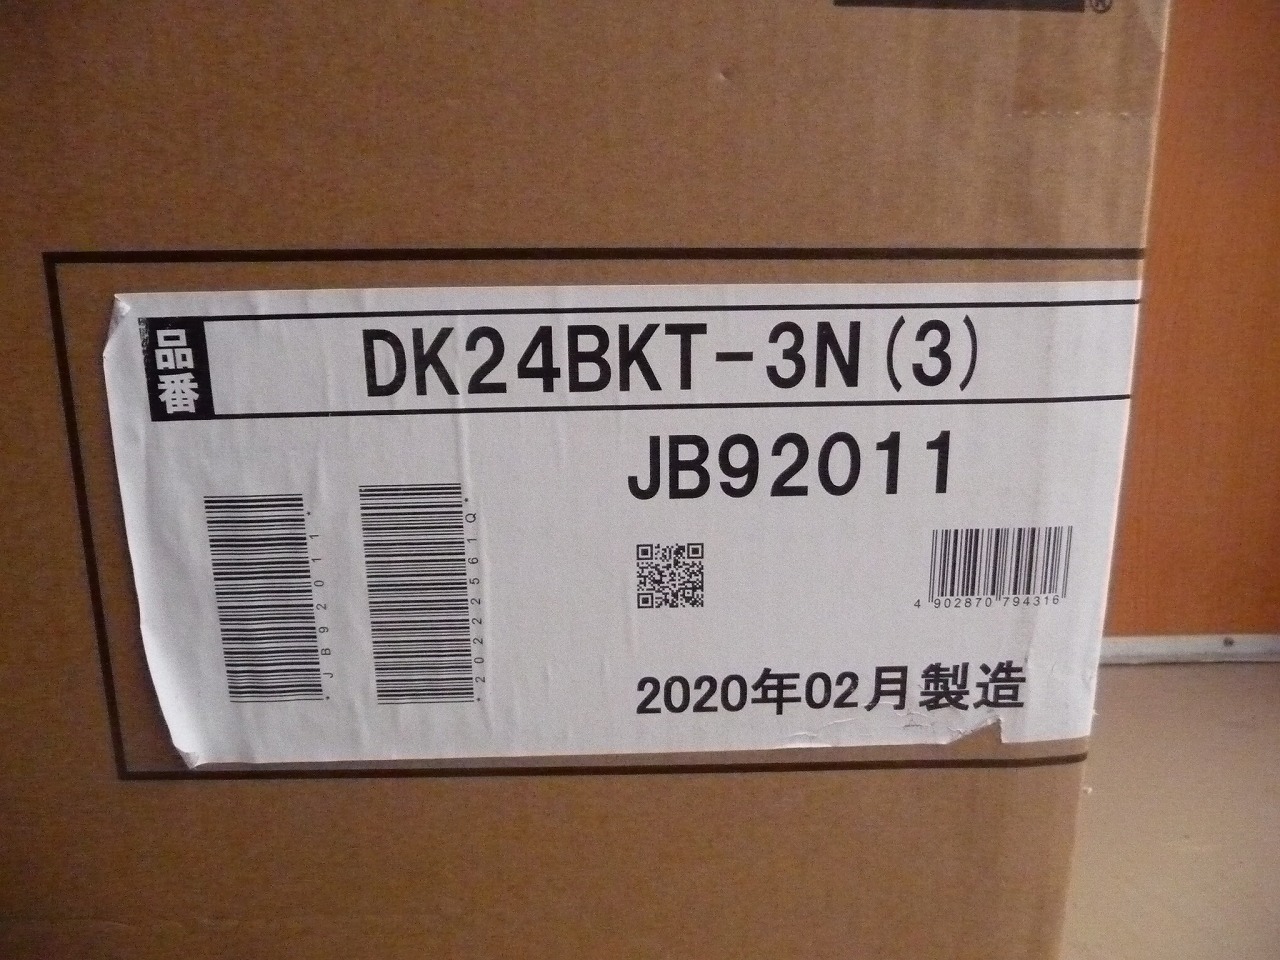 DK24BKT-3N